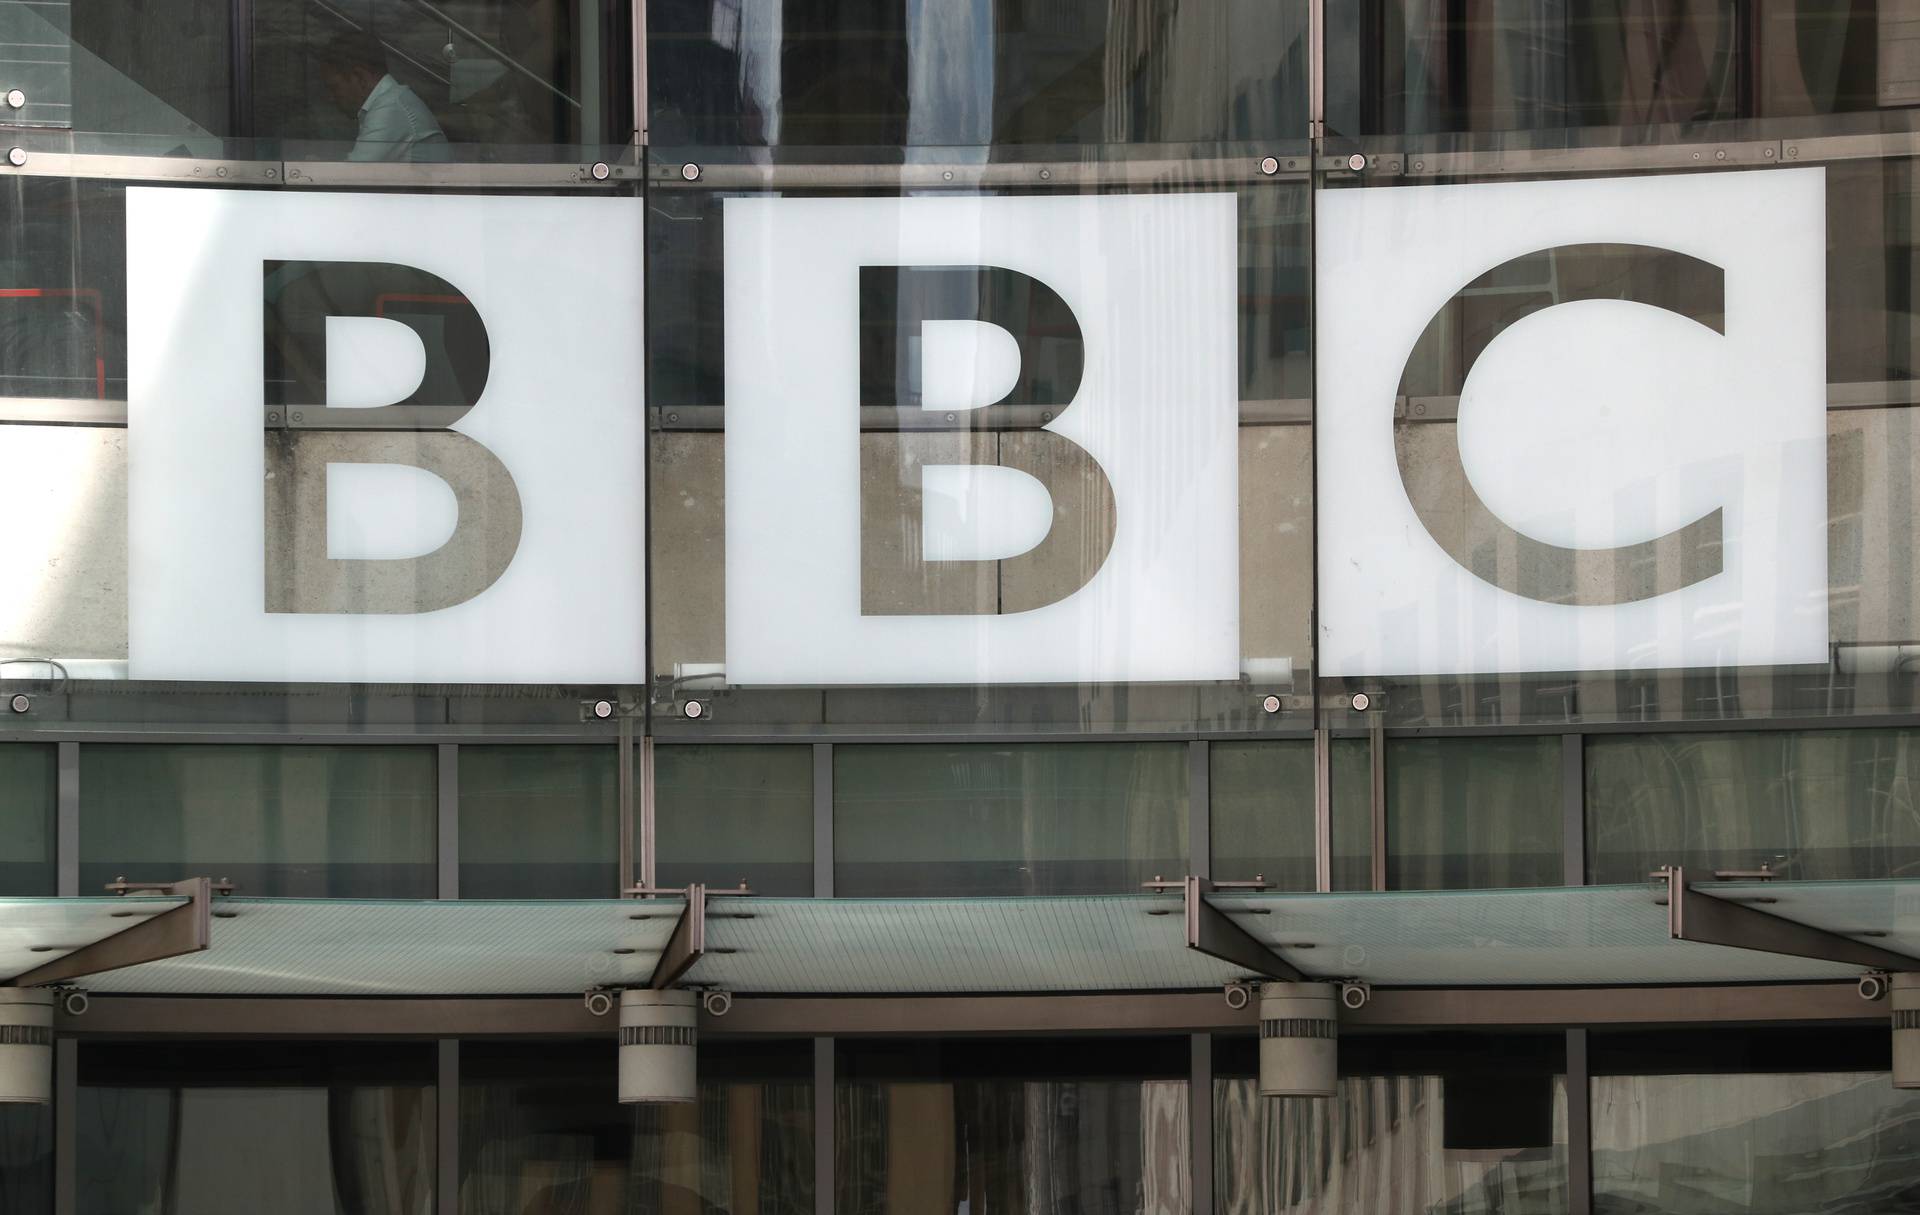 BBC signage